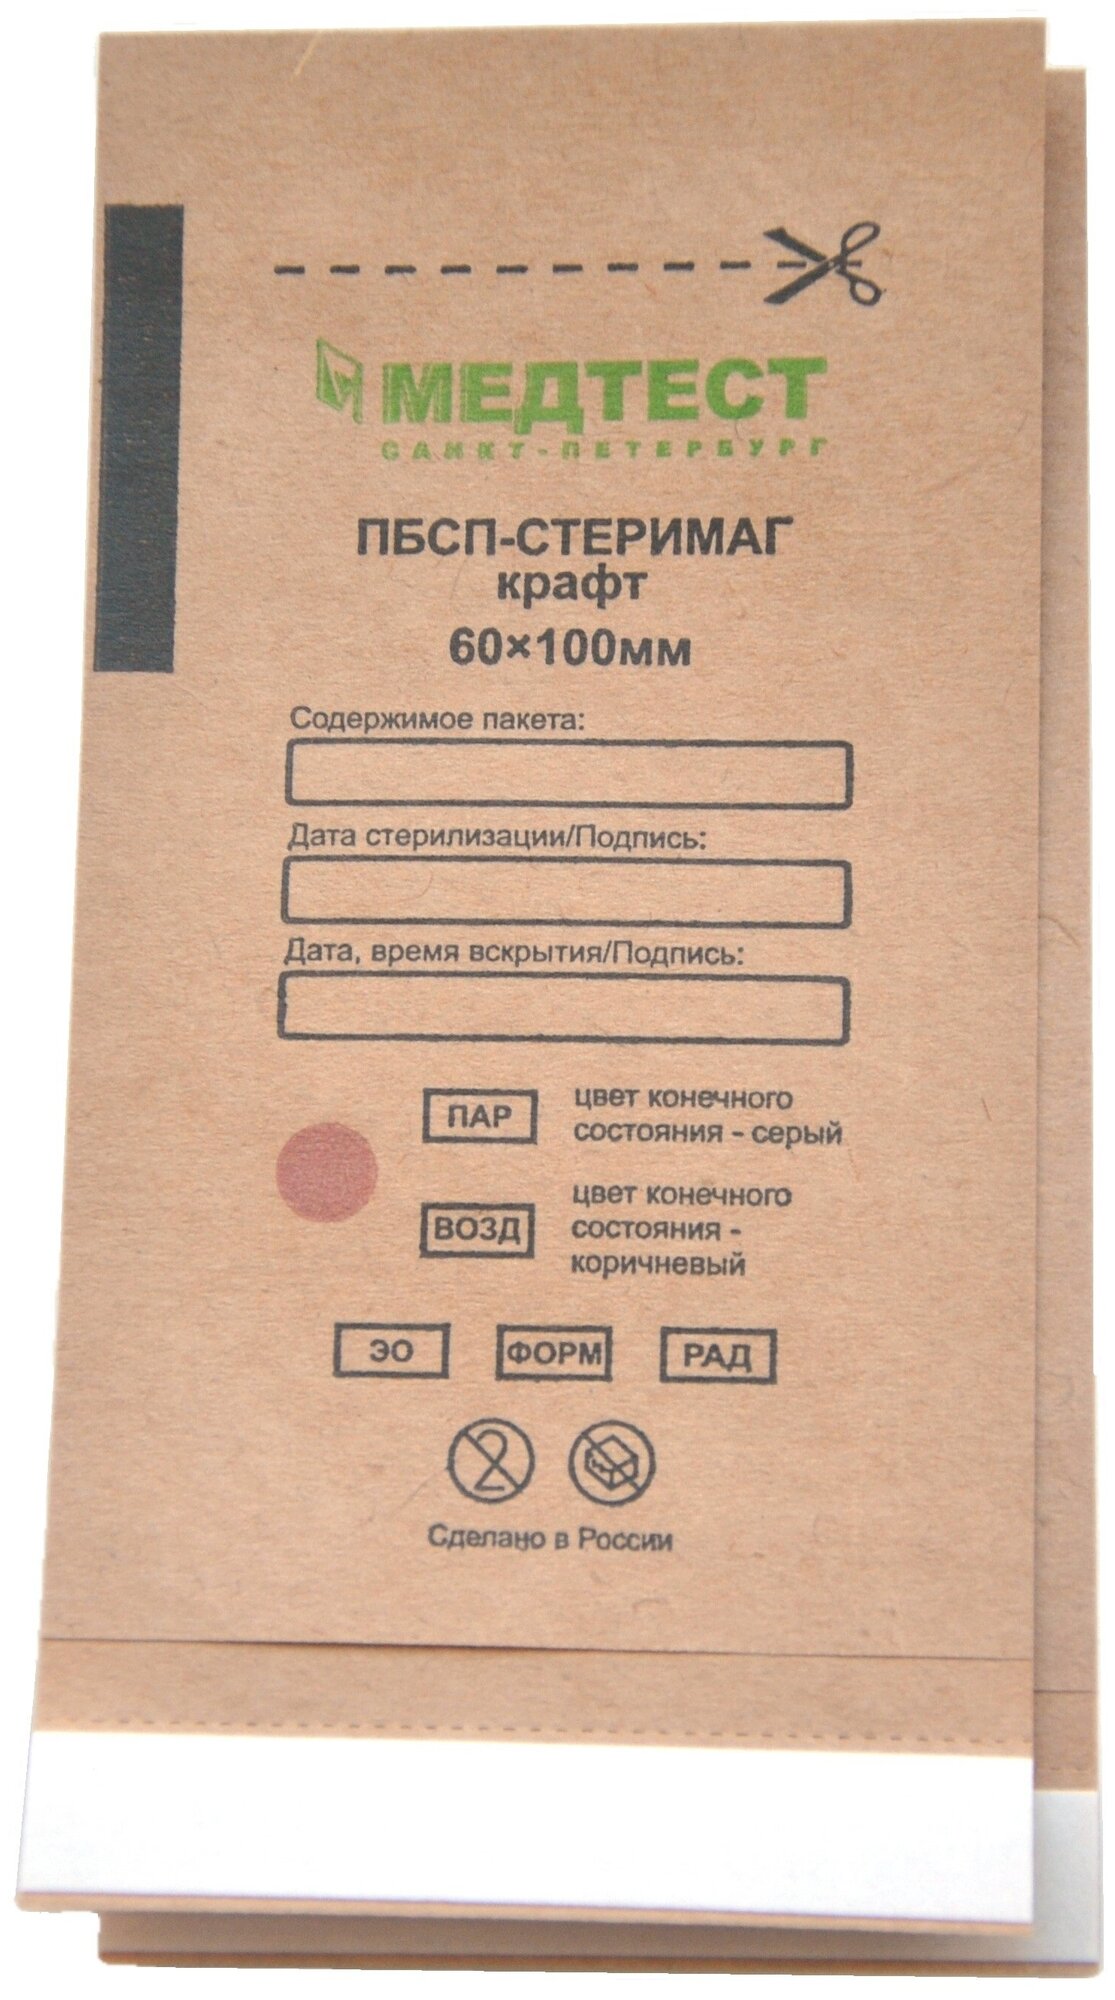 Пакеты для стерилизации 60х100 пбсп-стеримаг крафт коричневые 100 шт